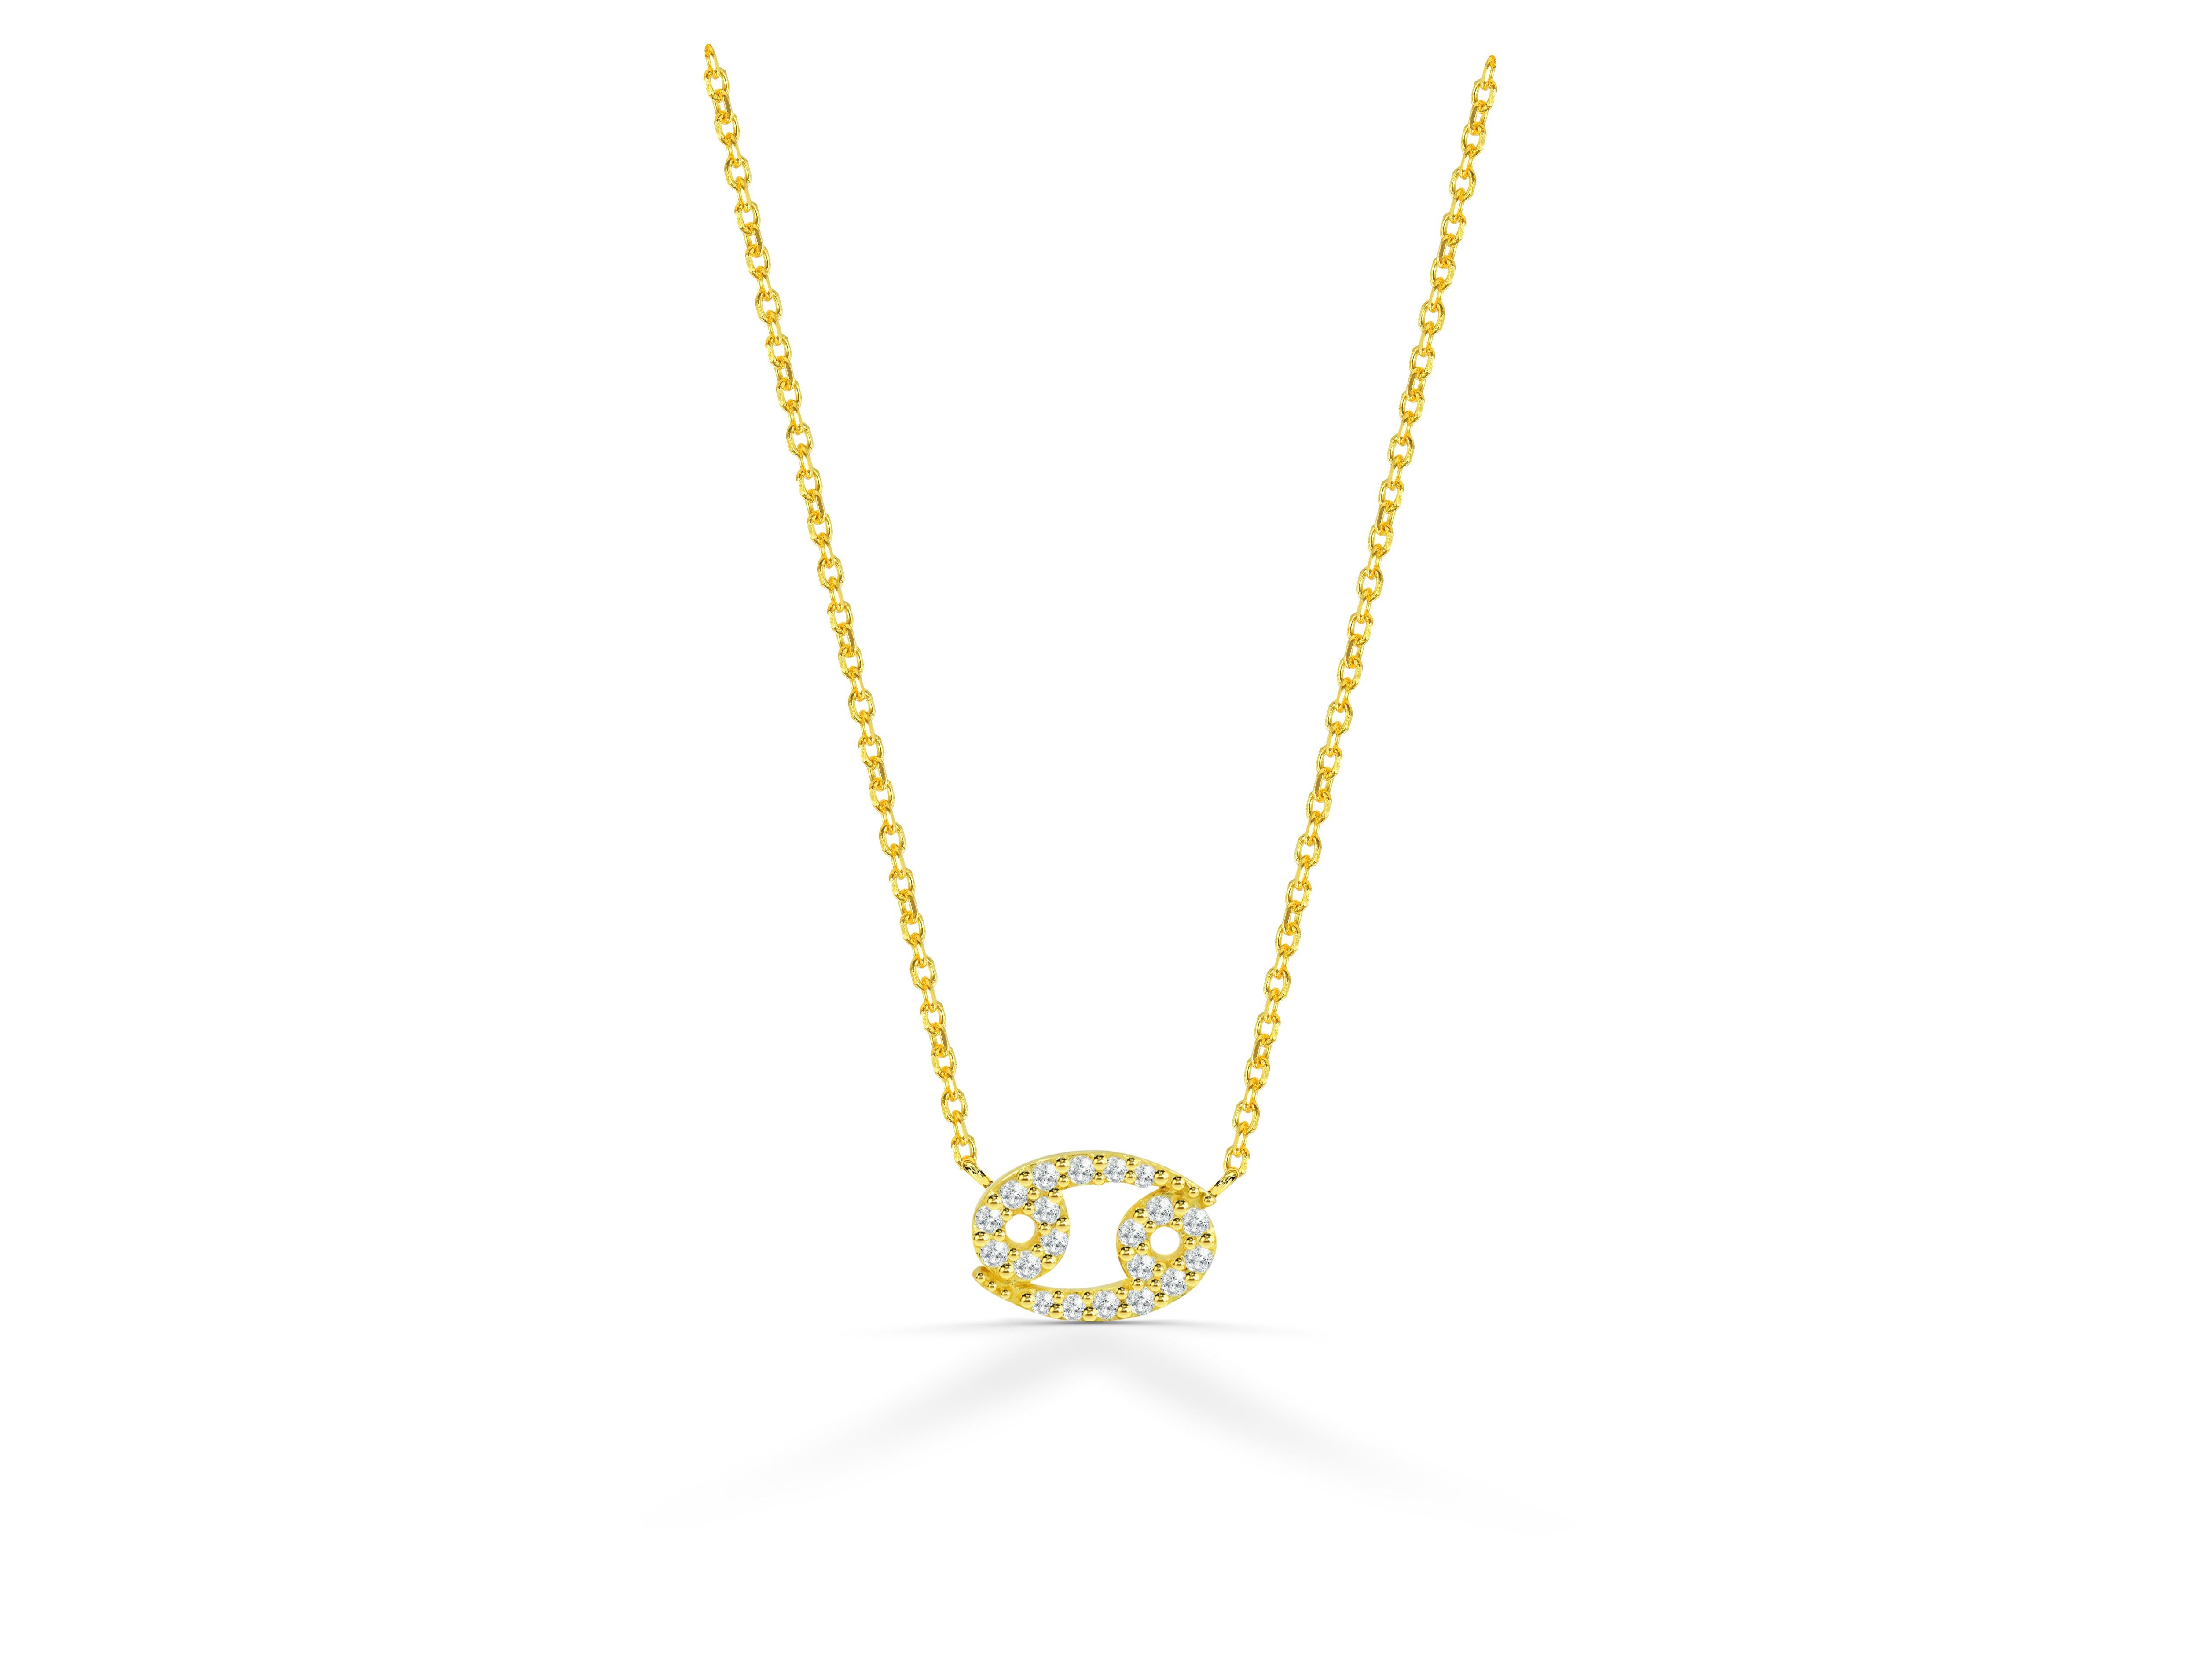 Schöne und funkelnde Diamant-Krebs-Halskette ist aus 18k massivem Gold in drei Farben von Gold, Rose Gold / Weißgold / Gelbgold zur Verfügung gestellt.

Natürlicher, echter, rund geschliffener Diamant - jeder Diamant wird von mir von Hand